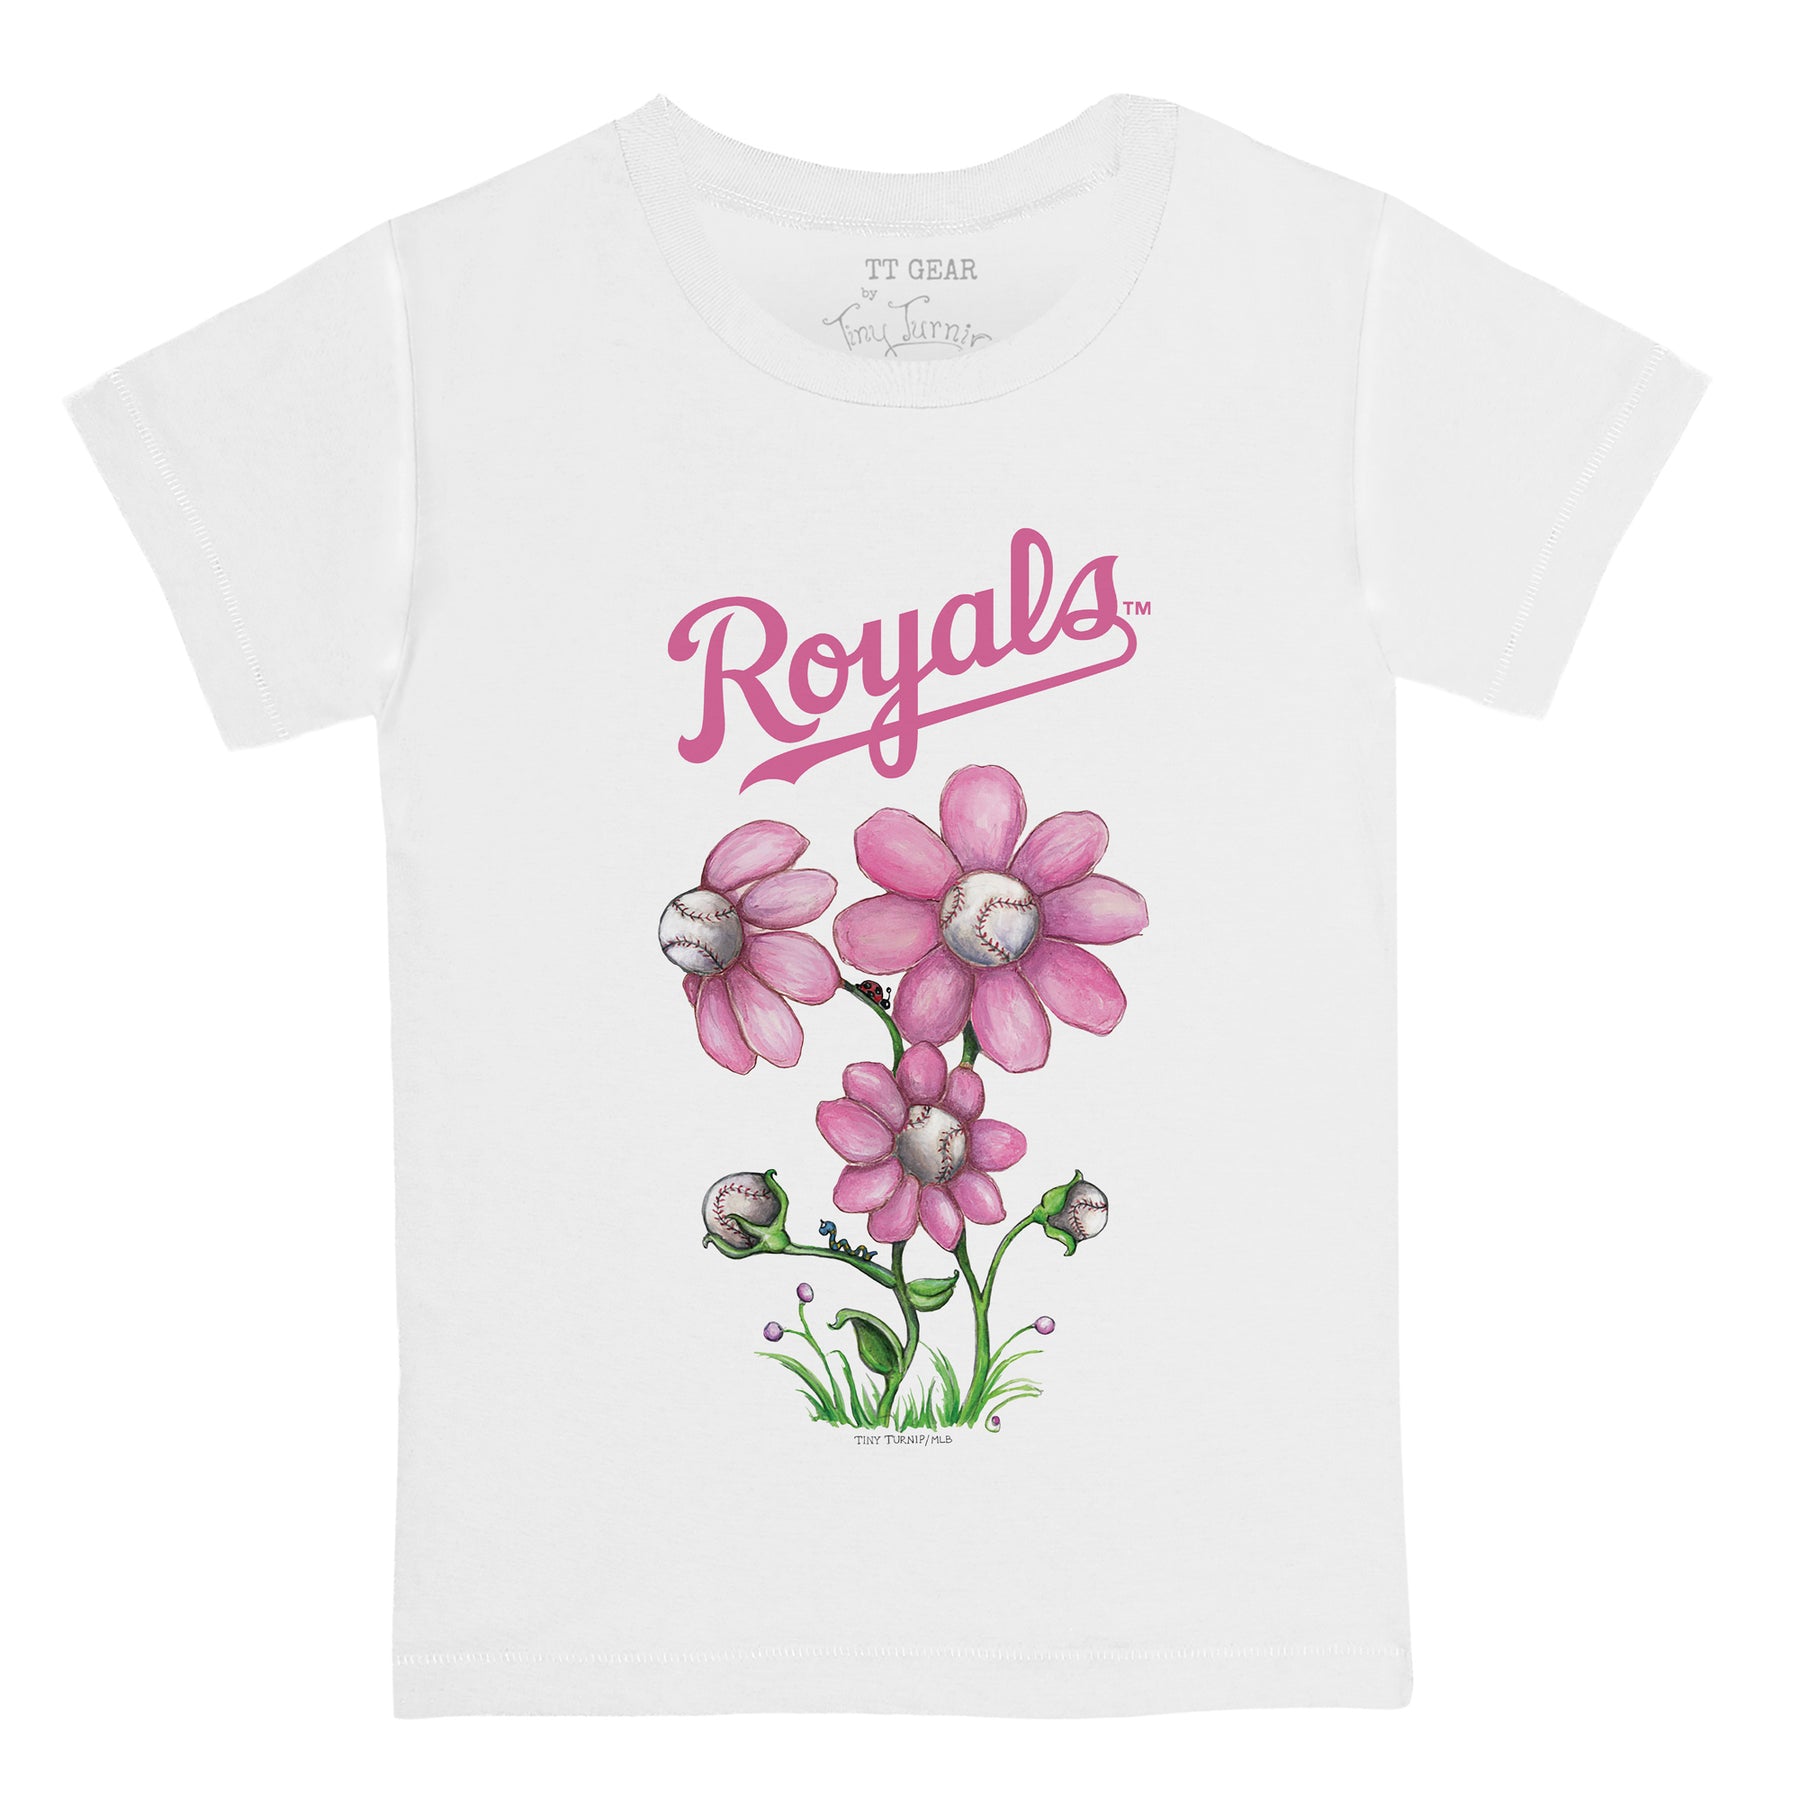 Kansas City Royals Blooming Baseballs Tee Shirt 12M / White